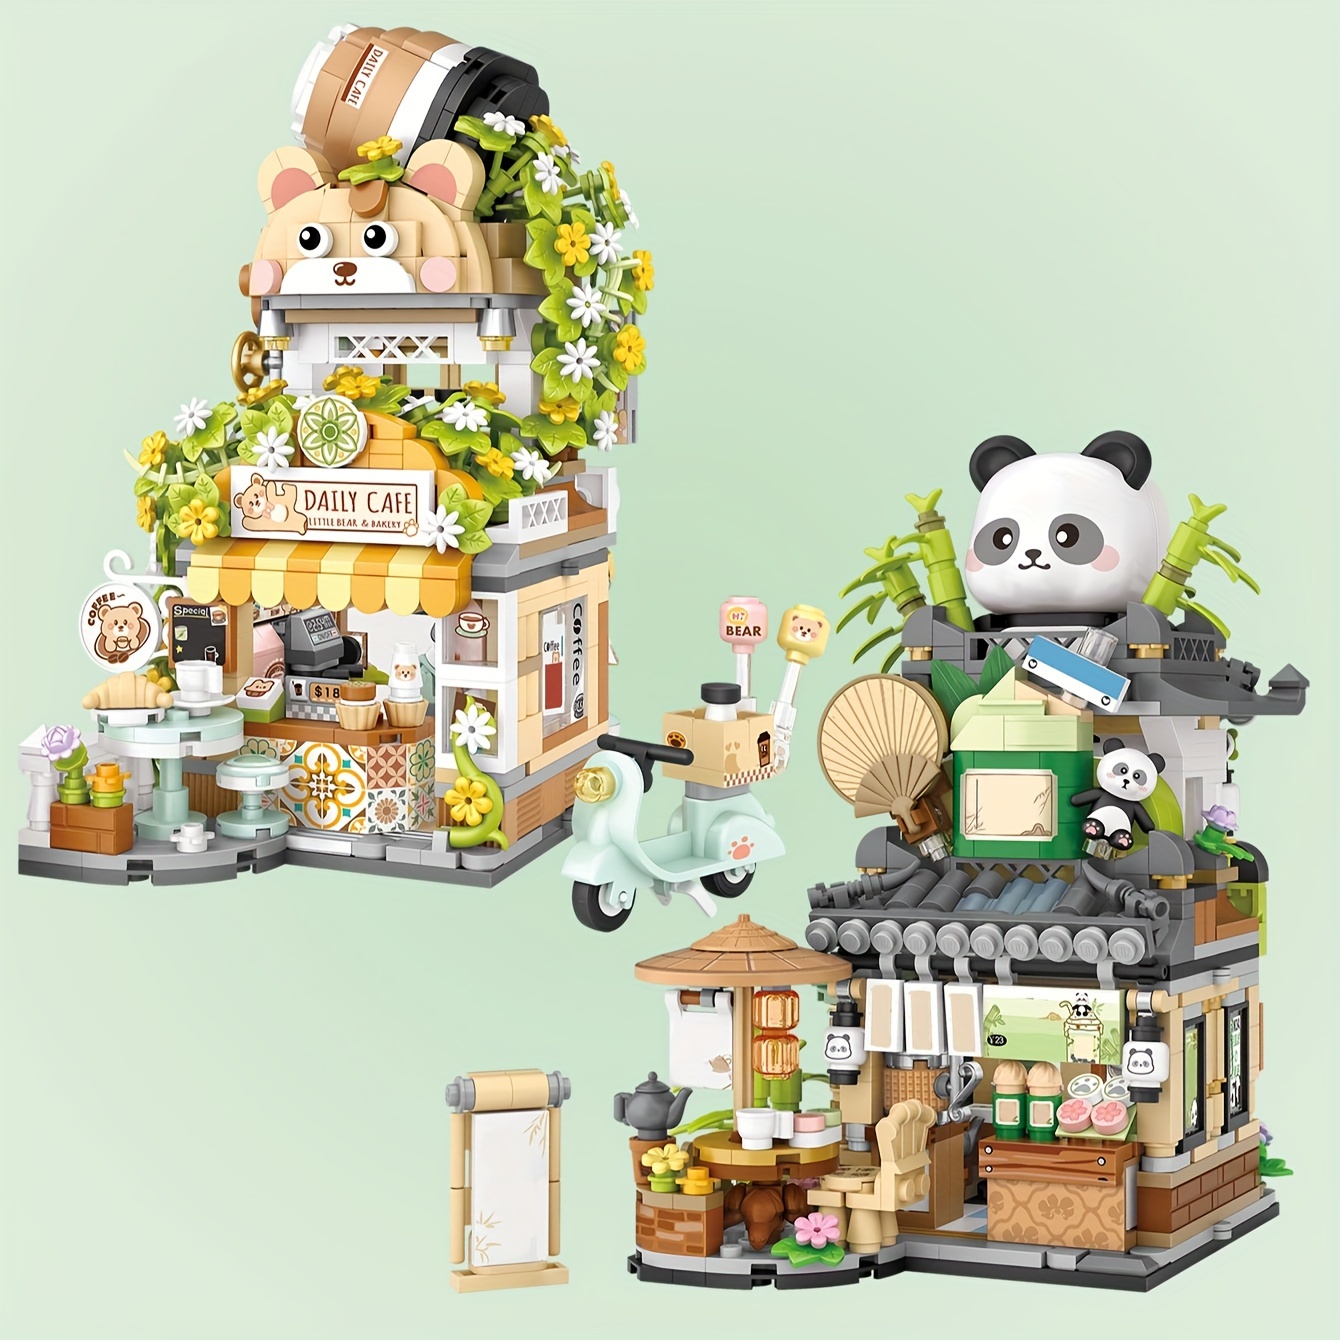 Panda Tea House